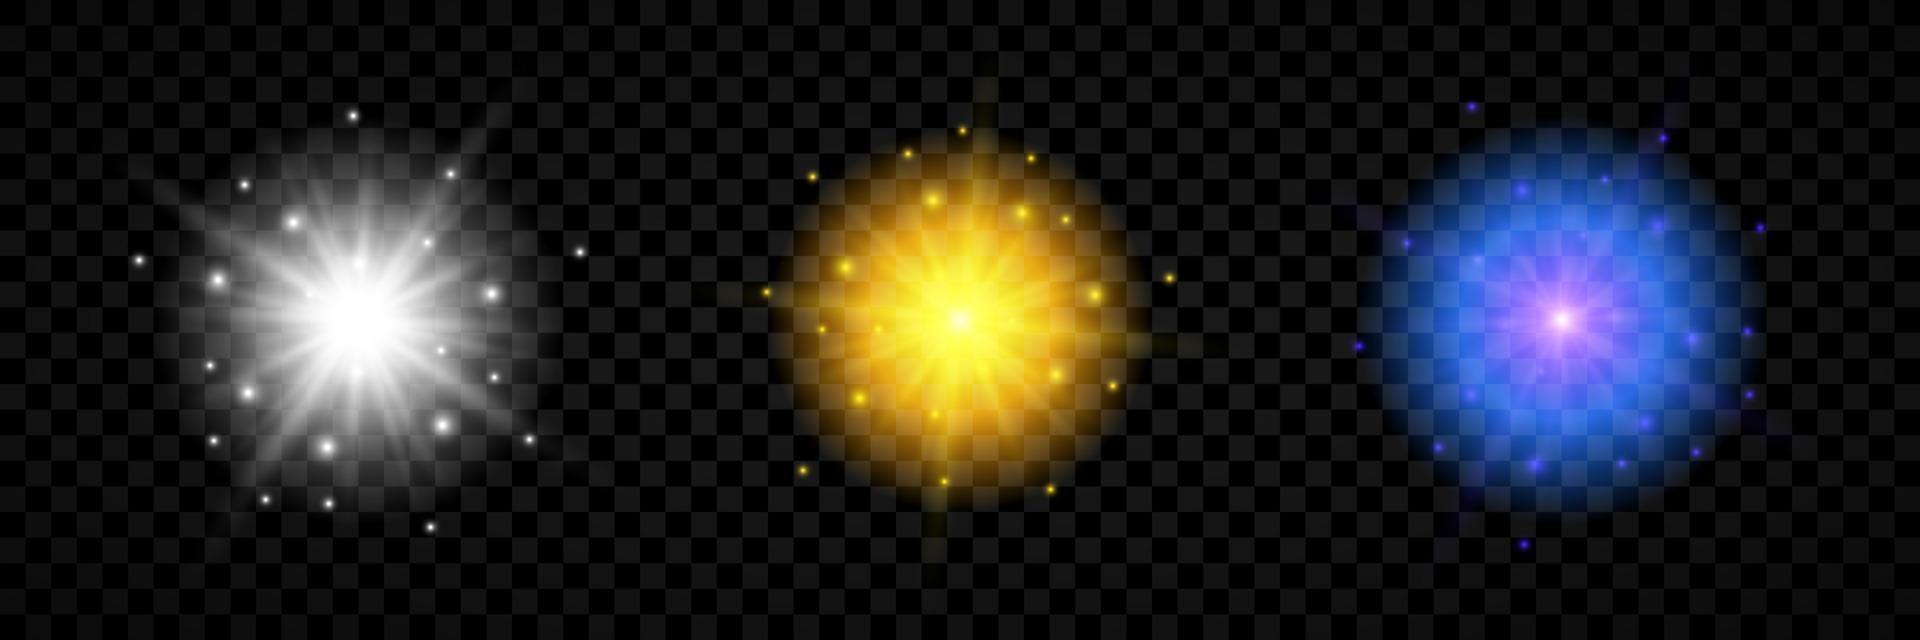 effet de lumière des fusées éclairantes. ensemble de trois effets de starburst de lumières rougeoyantes blanches, jaunes et bleues avec des étincelles vecteur